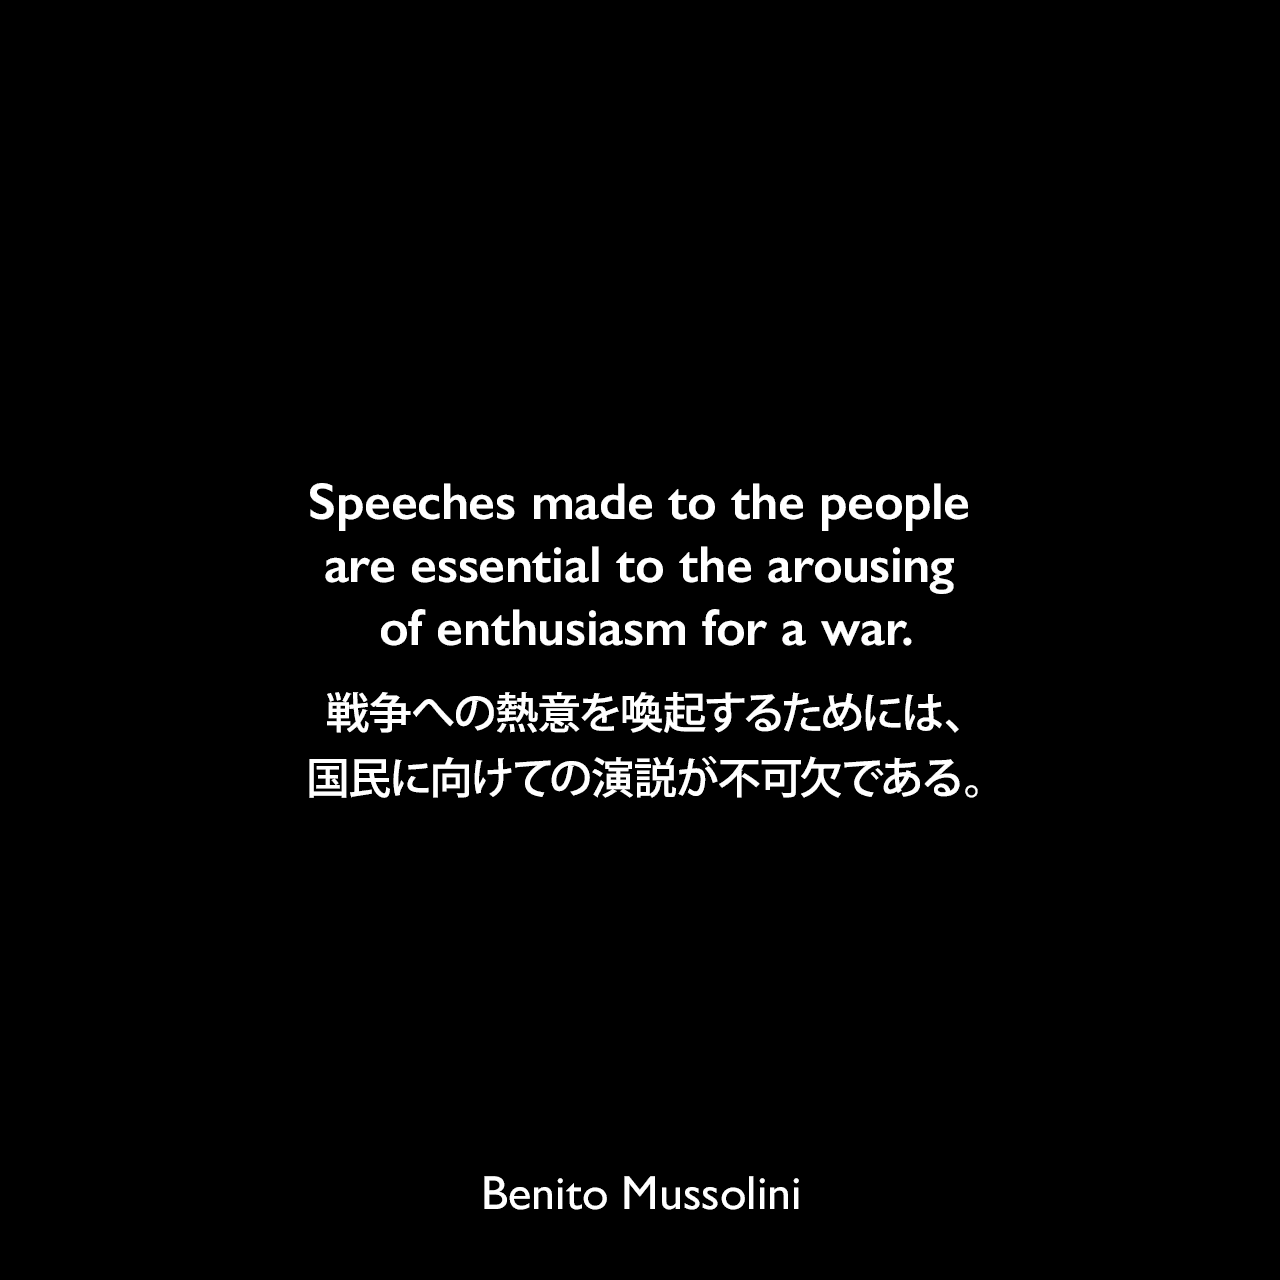 Speeches made to the people are essential to the arousing of enthusiasm for a war.戦争への熱意を喚起するためには、国民に向けての演説が不可欠である。- 1932年3月23日から4月4日、ローマのヴェネツィア宮殿でのインタビューよりBenito Mussolini